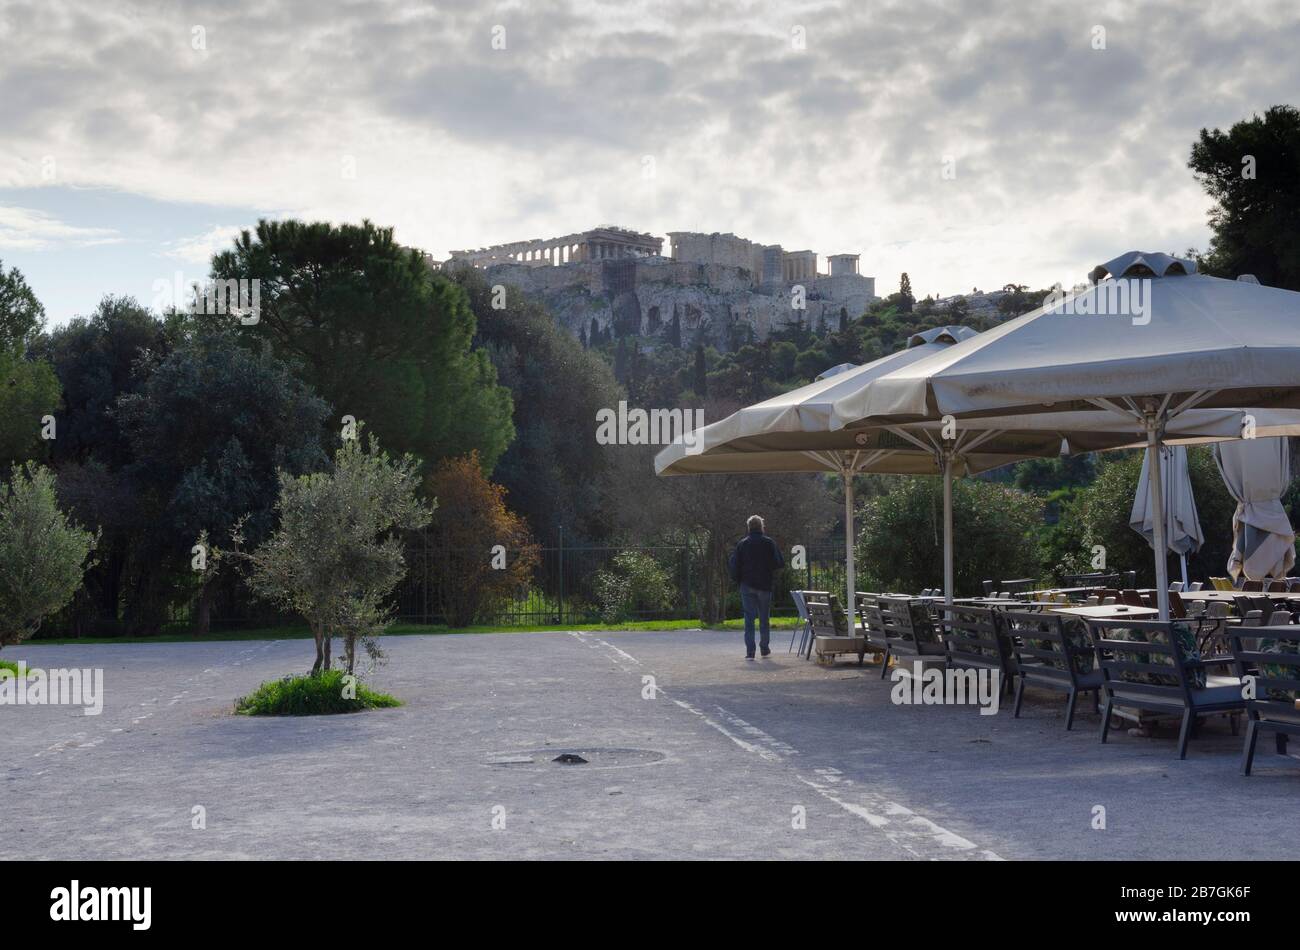 ATHEN, GRIECHENLAND - 03. März 2020 - der Parthenon von Thissio im Zentrum Athens Griechenland aus gesehen Stockfoto